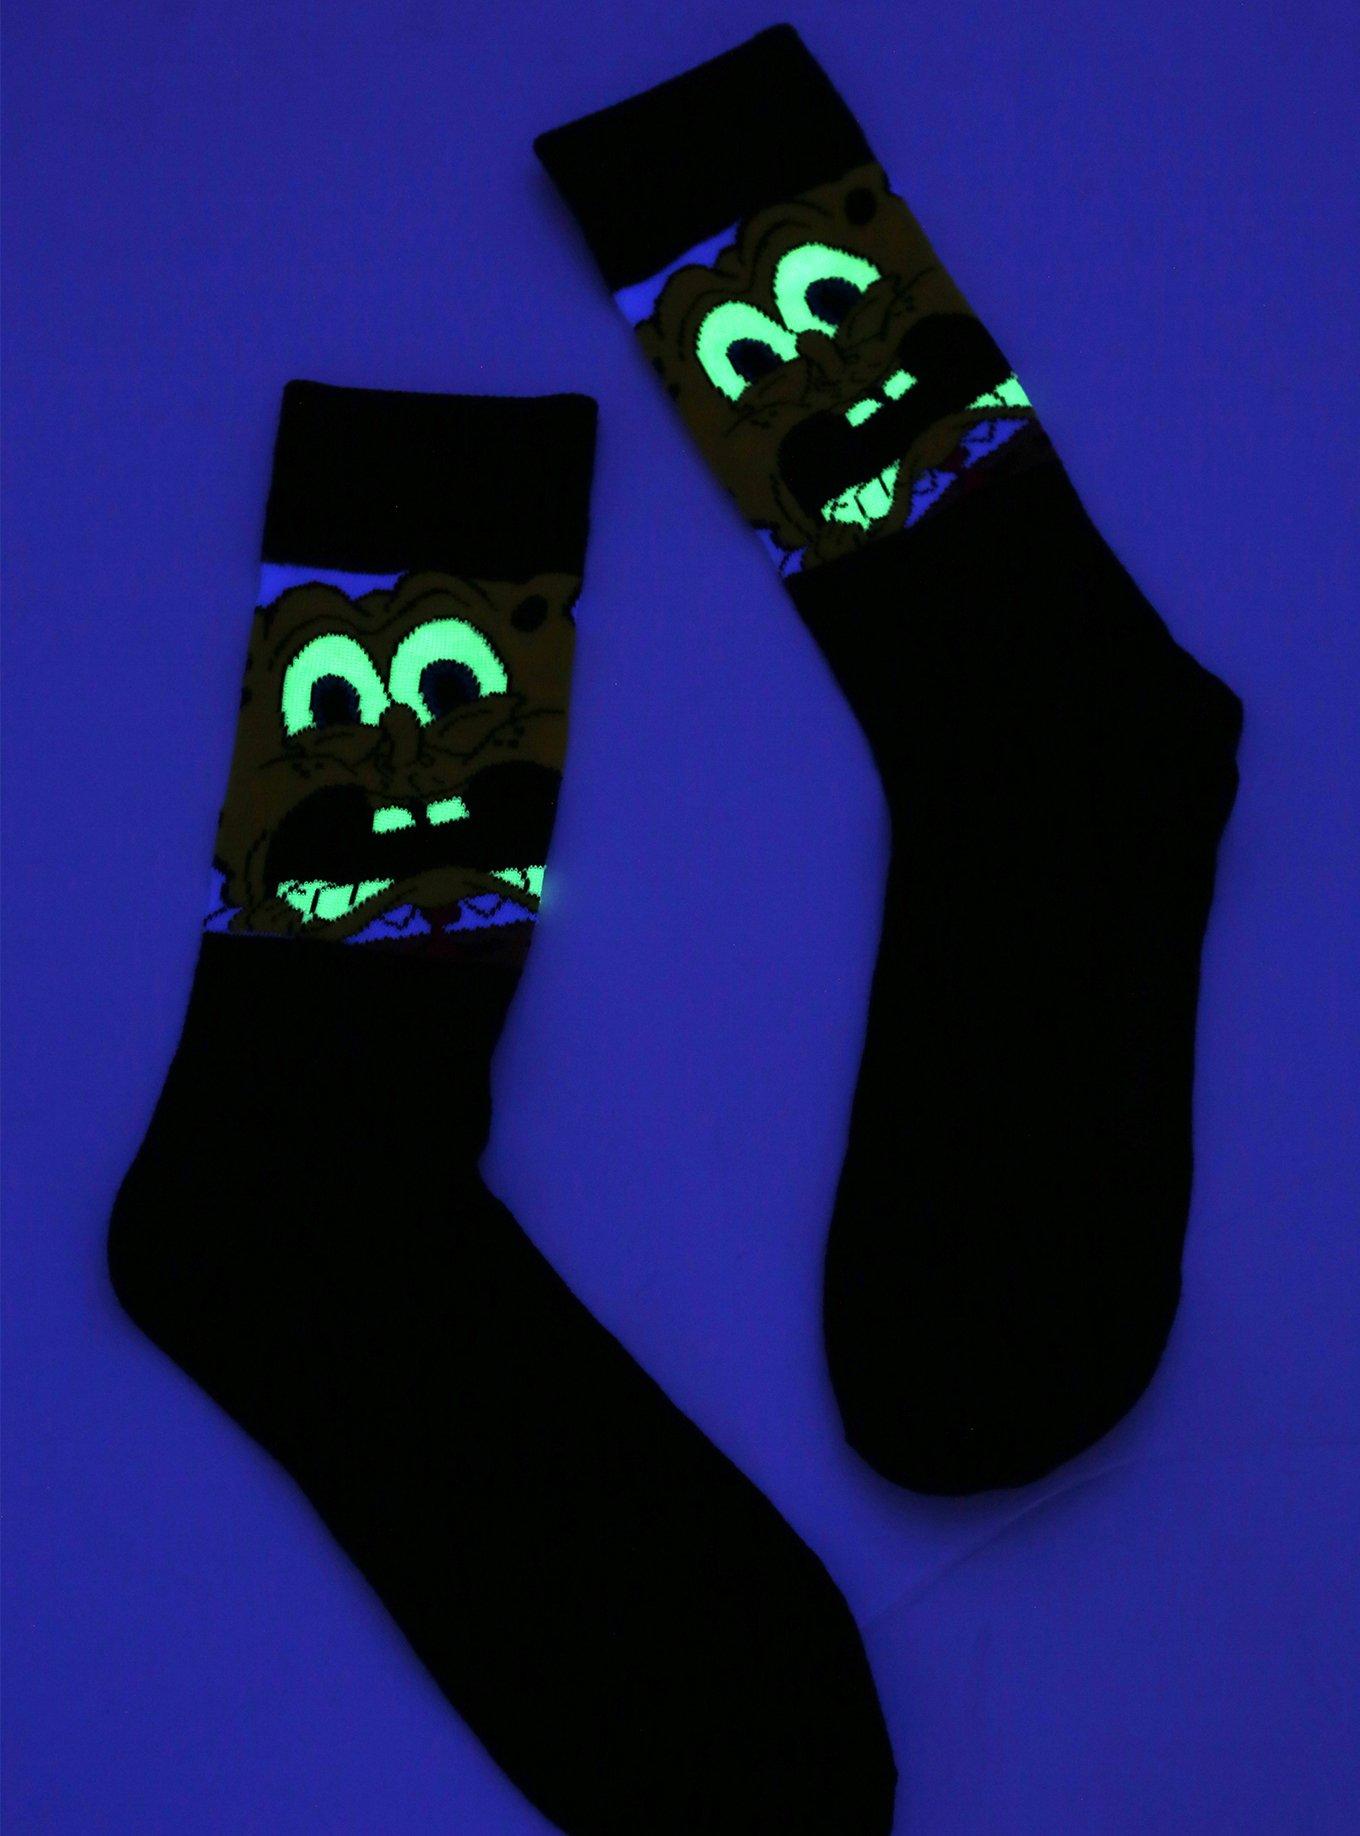 SpongeBob SquarePants Glow-In-The-Dark Crew Socks, , alternate